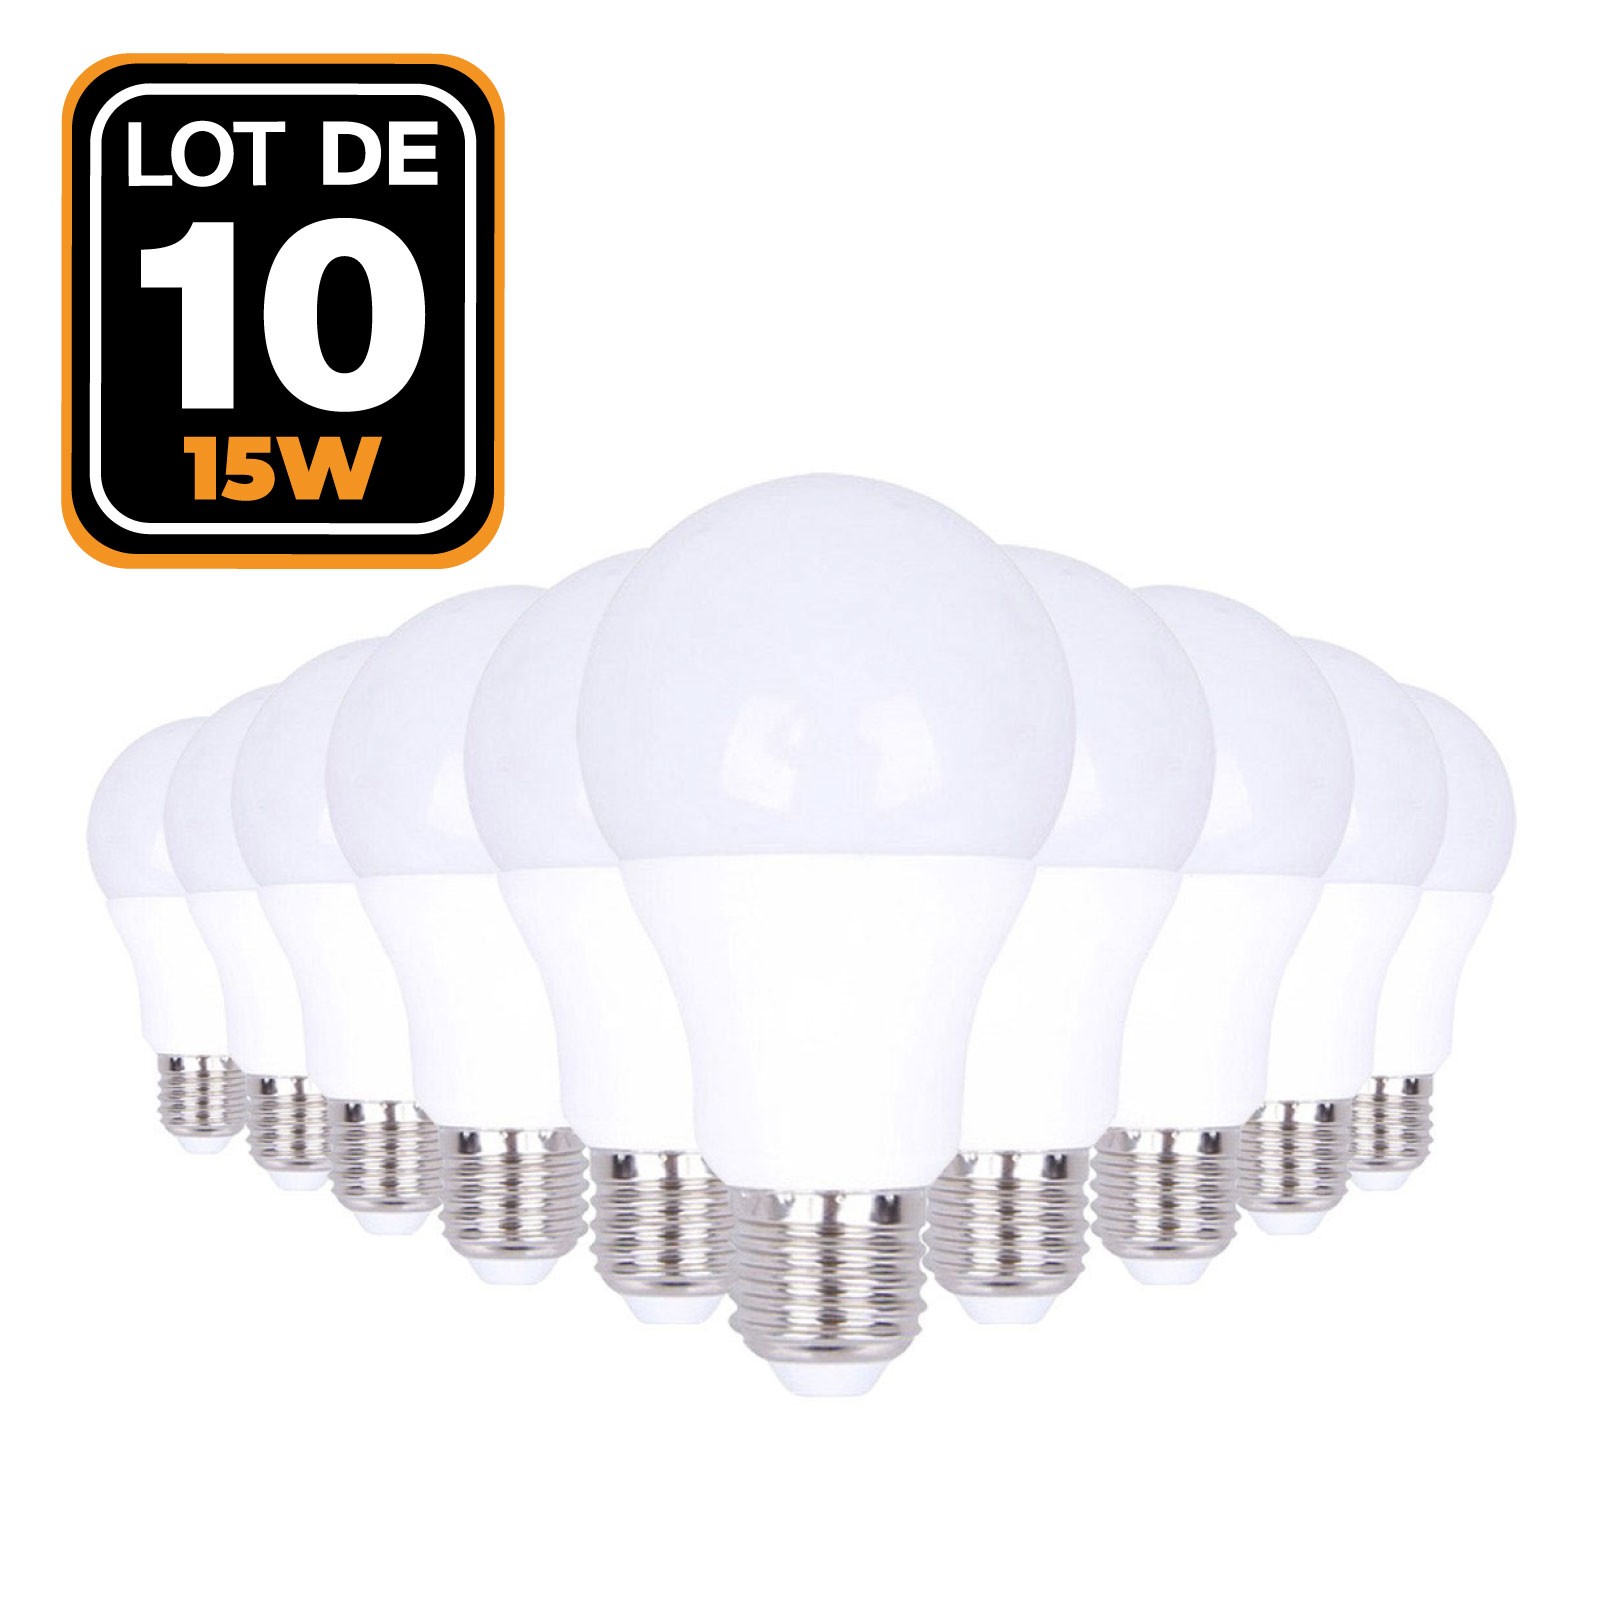 Lot de 10 Ampoules LED E27 15W Blanc Chaud 6000K